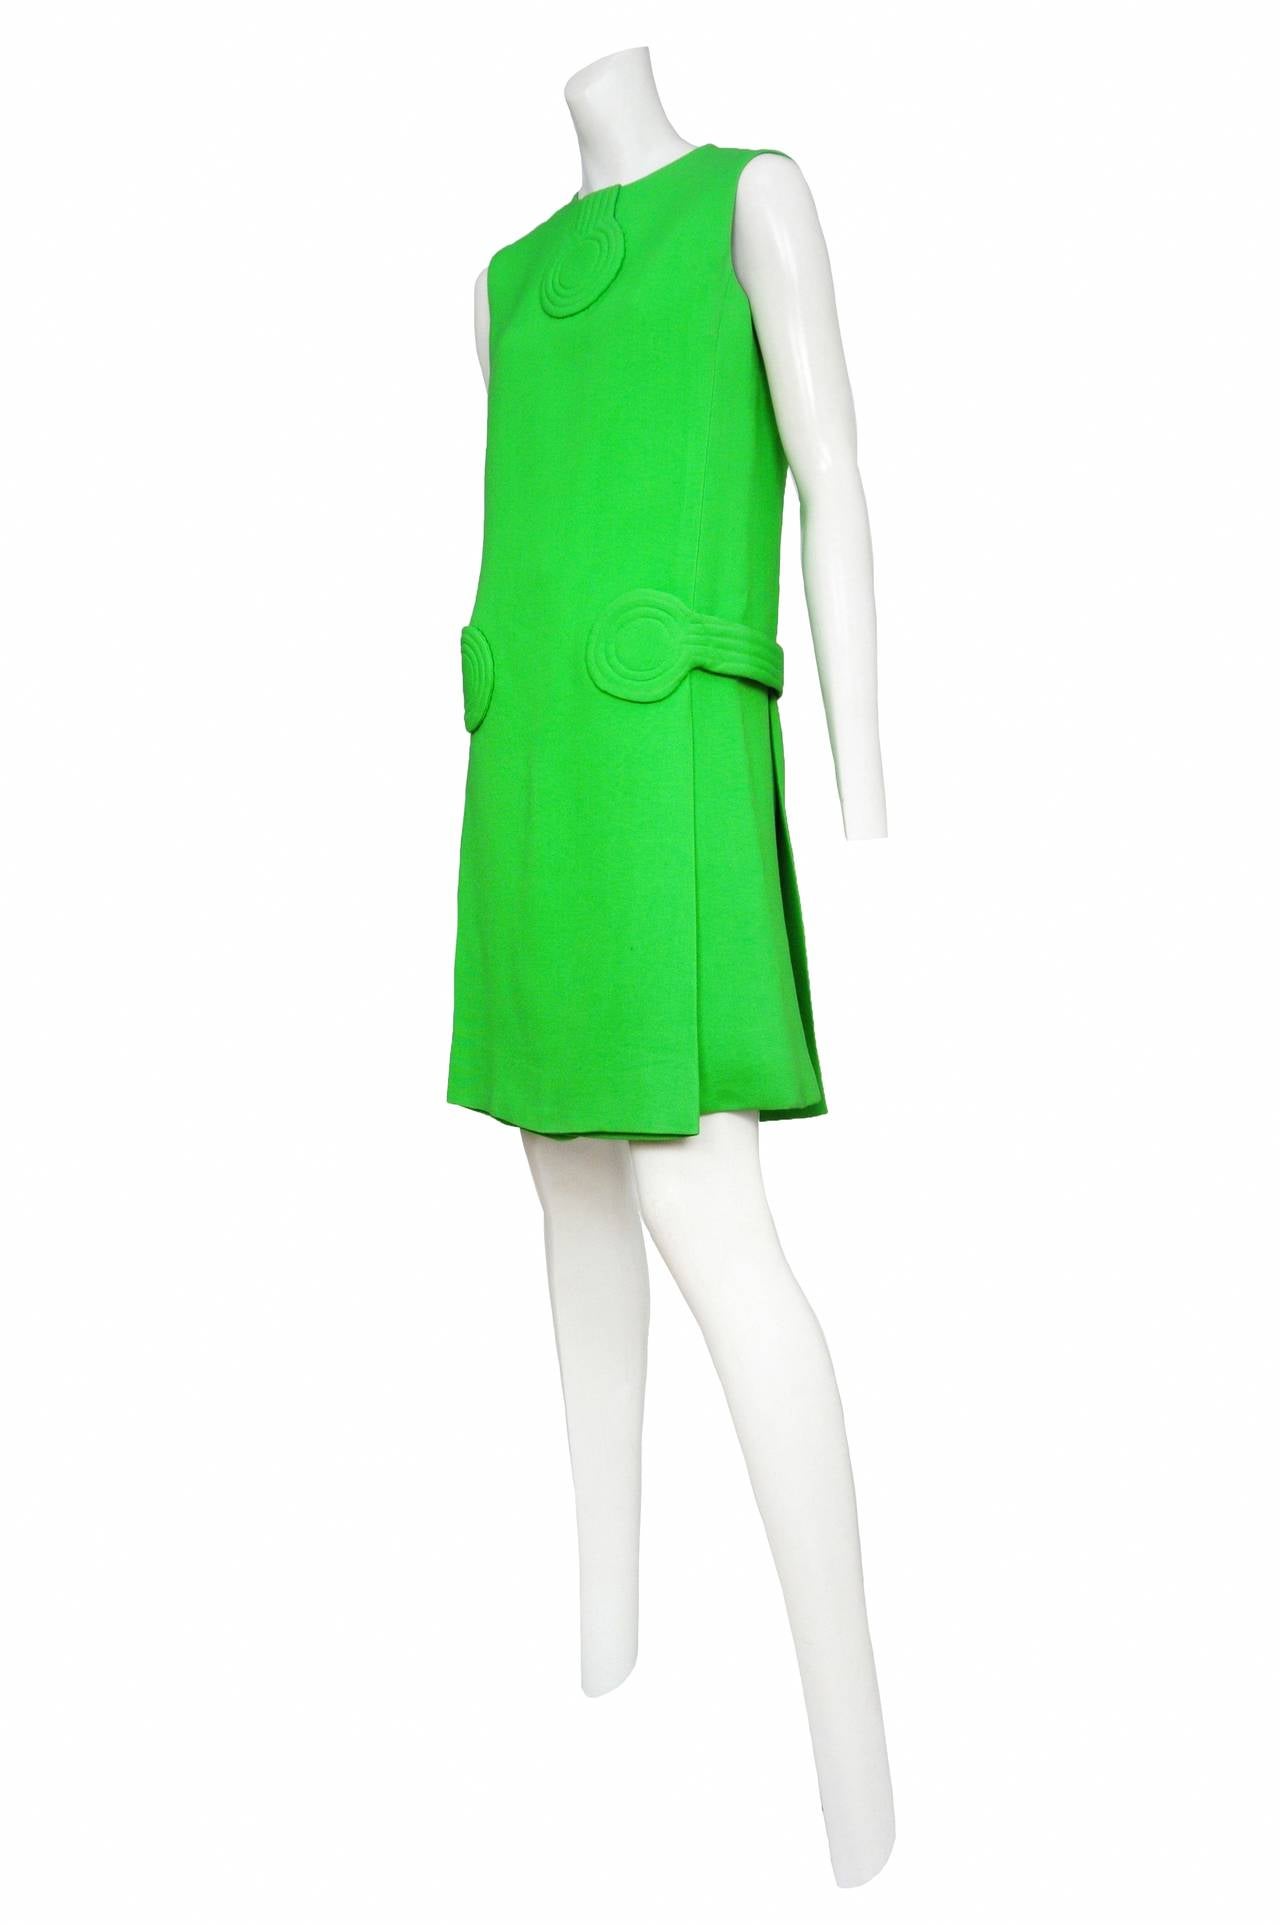 Pierre Cardin Green Futuristic Dress at 1stdibs